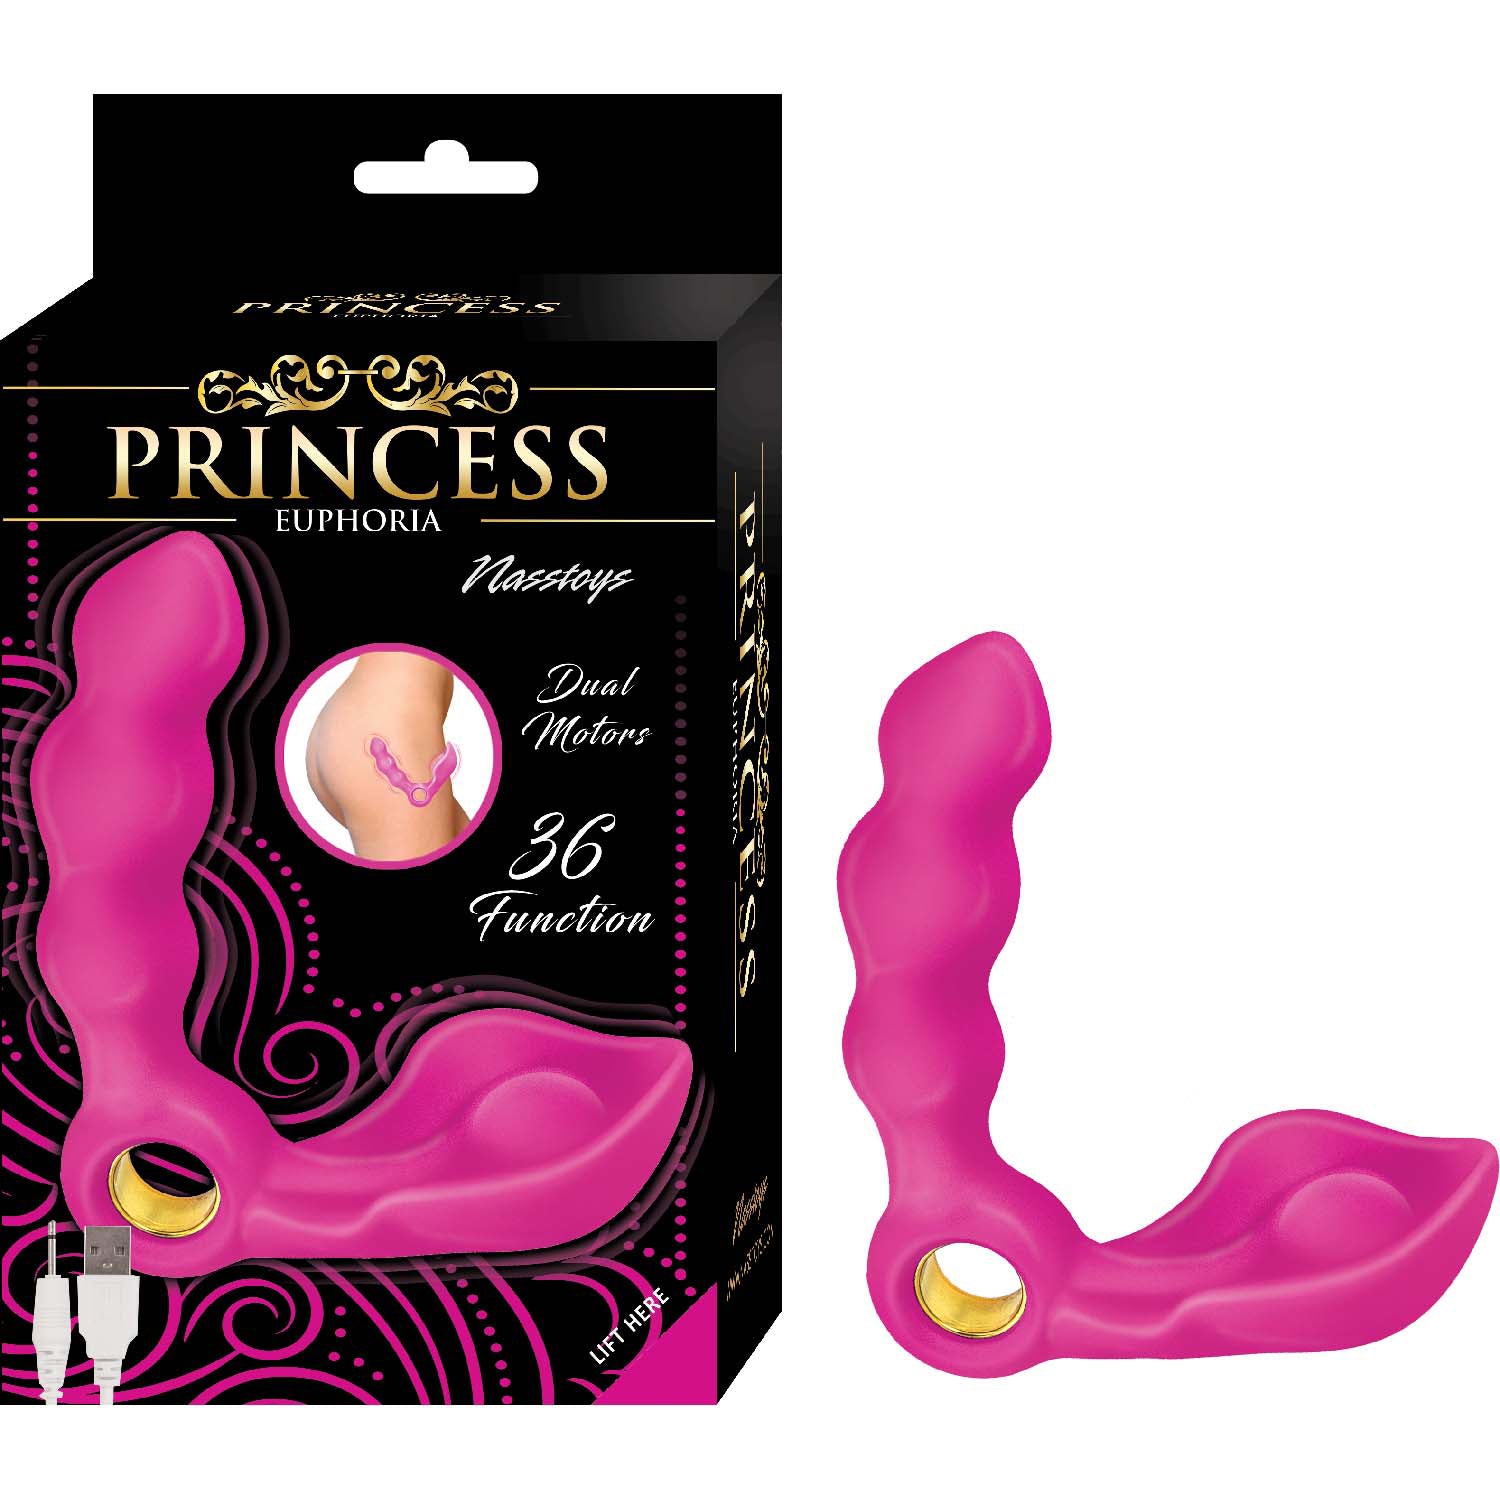 Nasstoys Princess Euphoria - Ultimate G-Spot Vibrator Pink